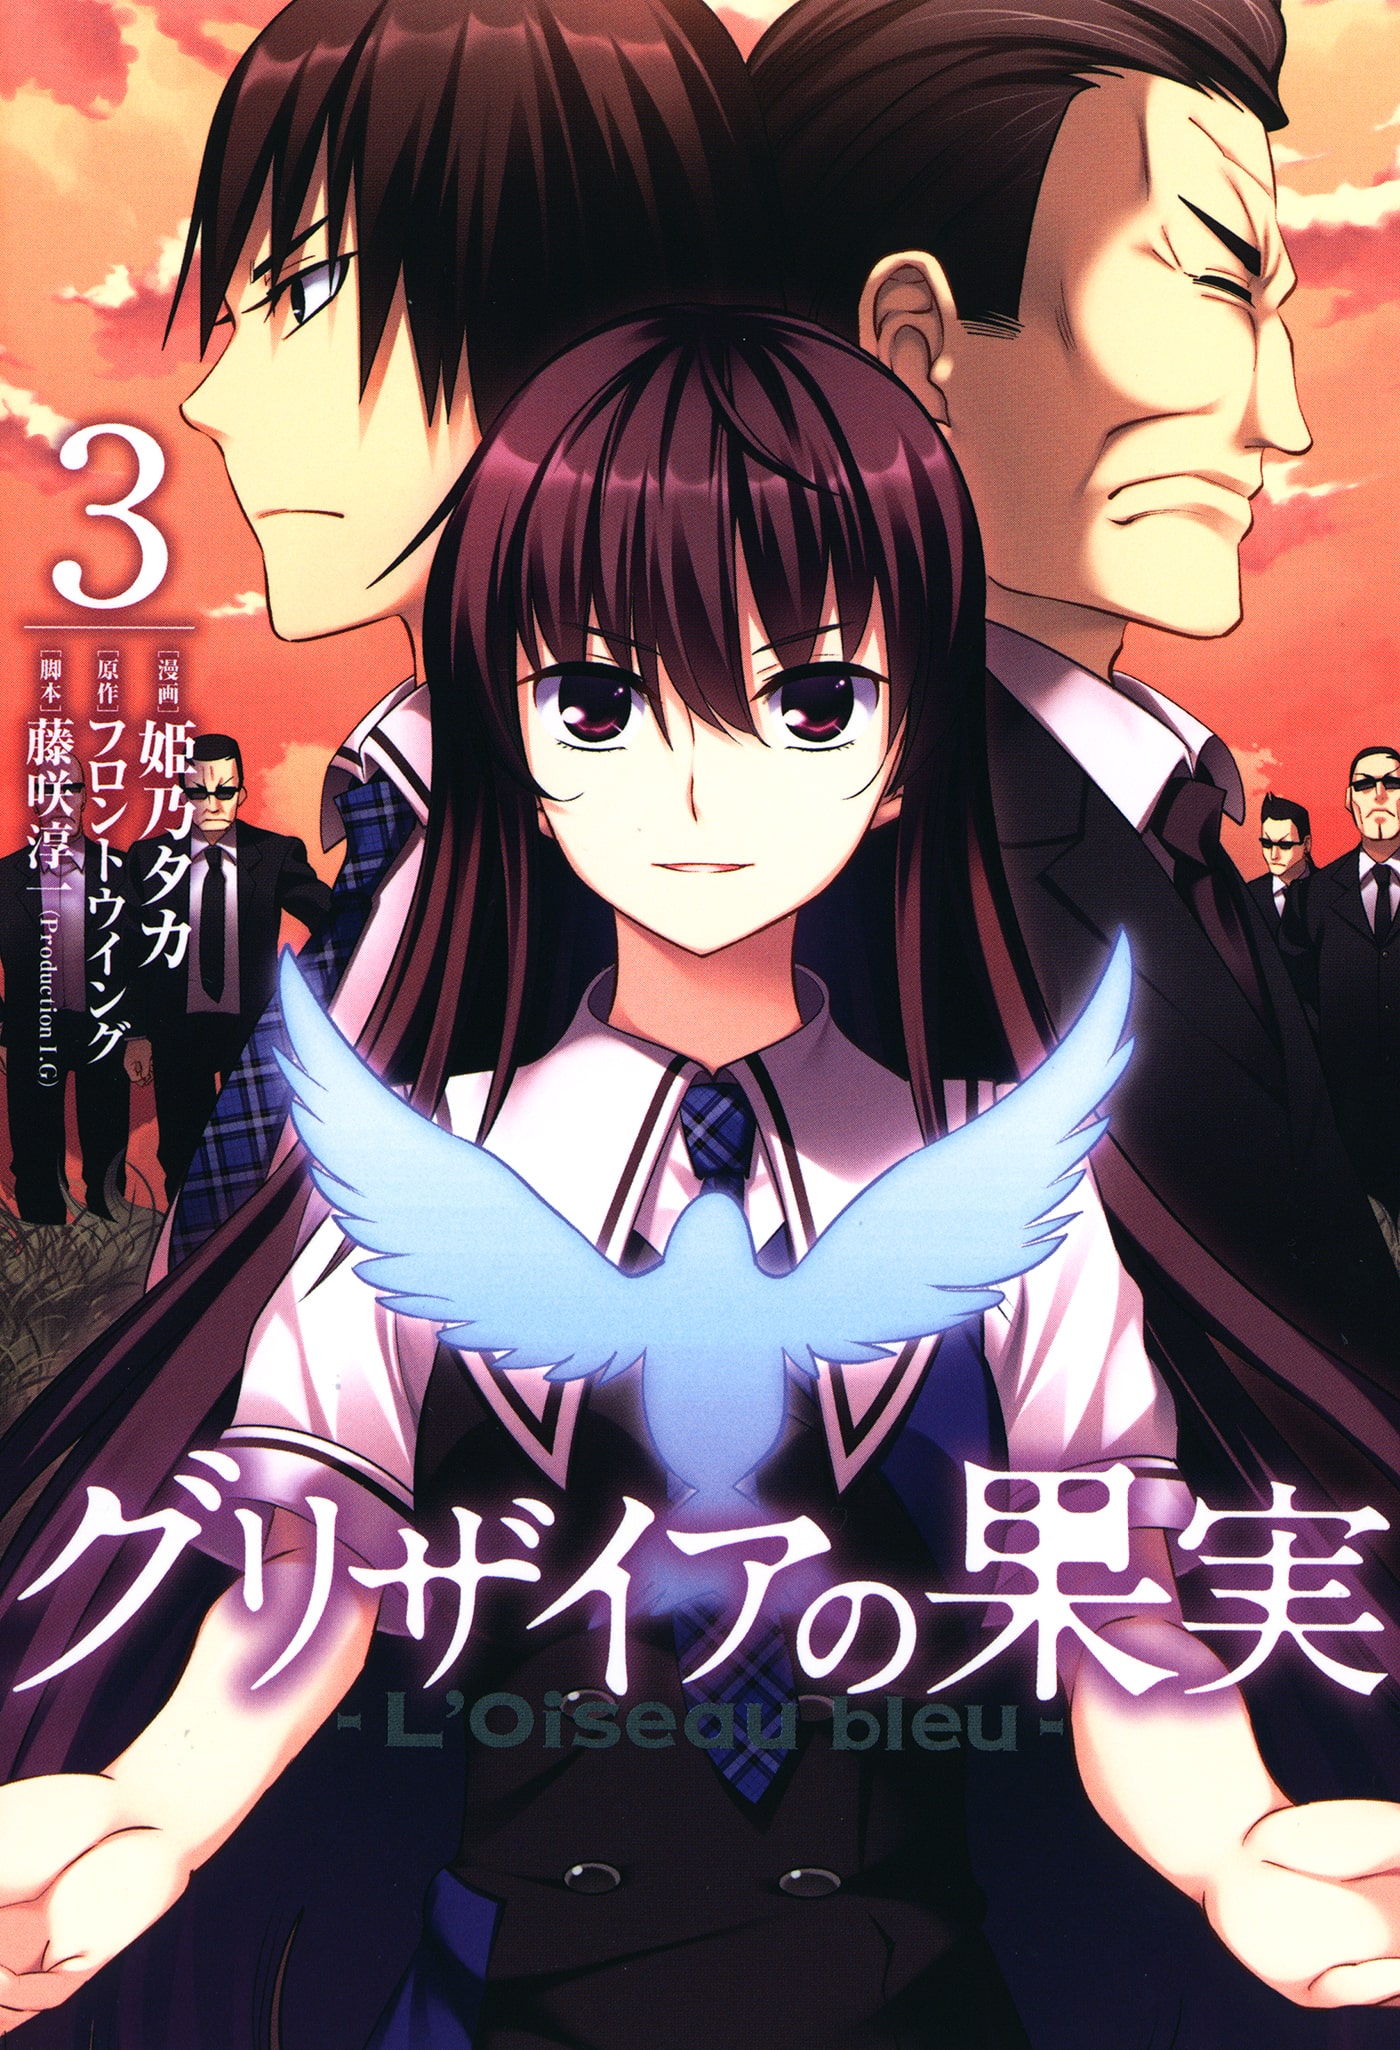 Manga, Grisaia no Kajitsu Wiki